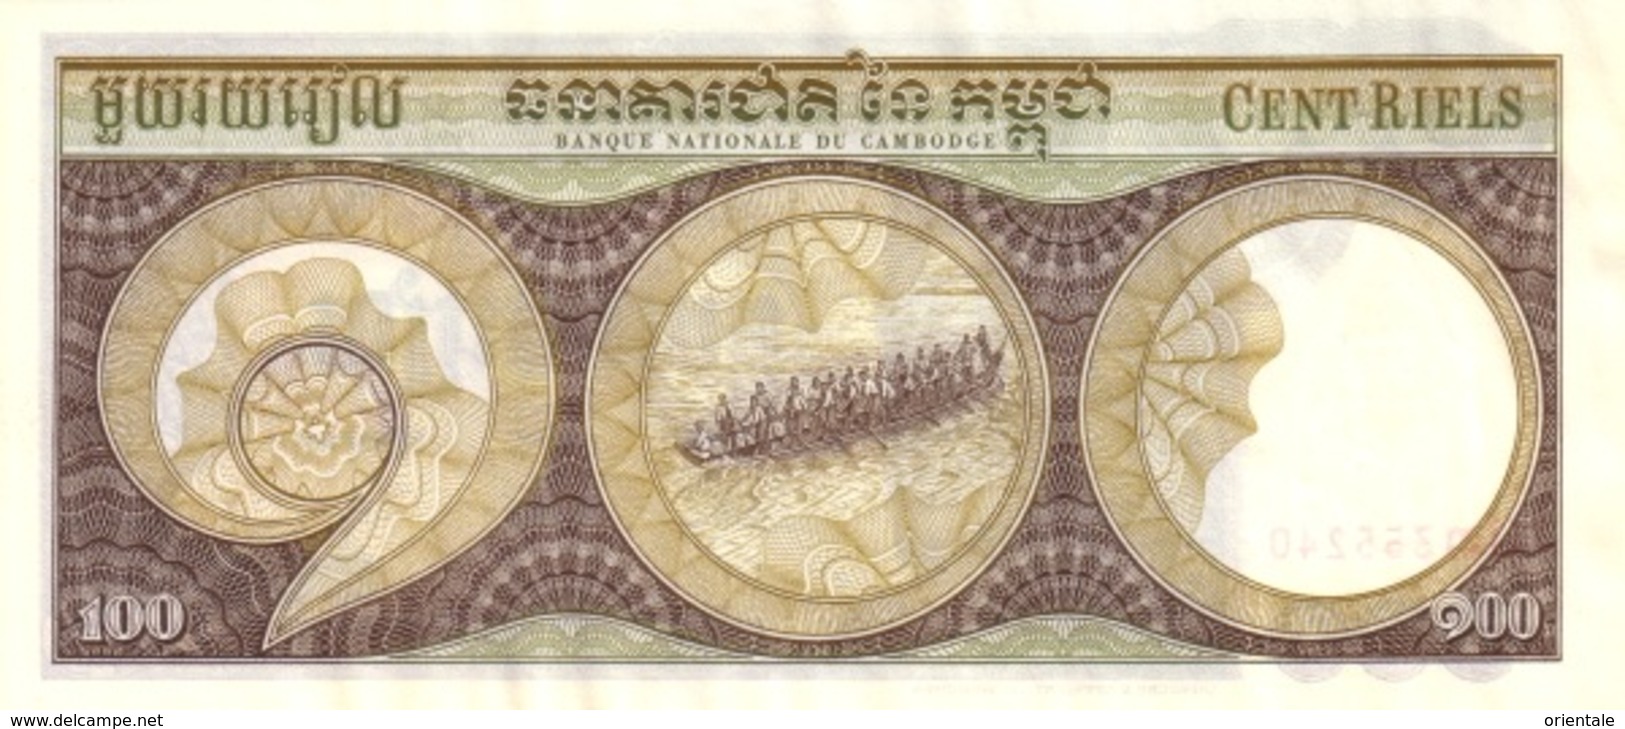 CAMBODIA  P. 8c 100 R 1975 UNC (s. 15) - Cambodia